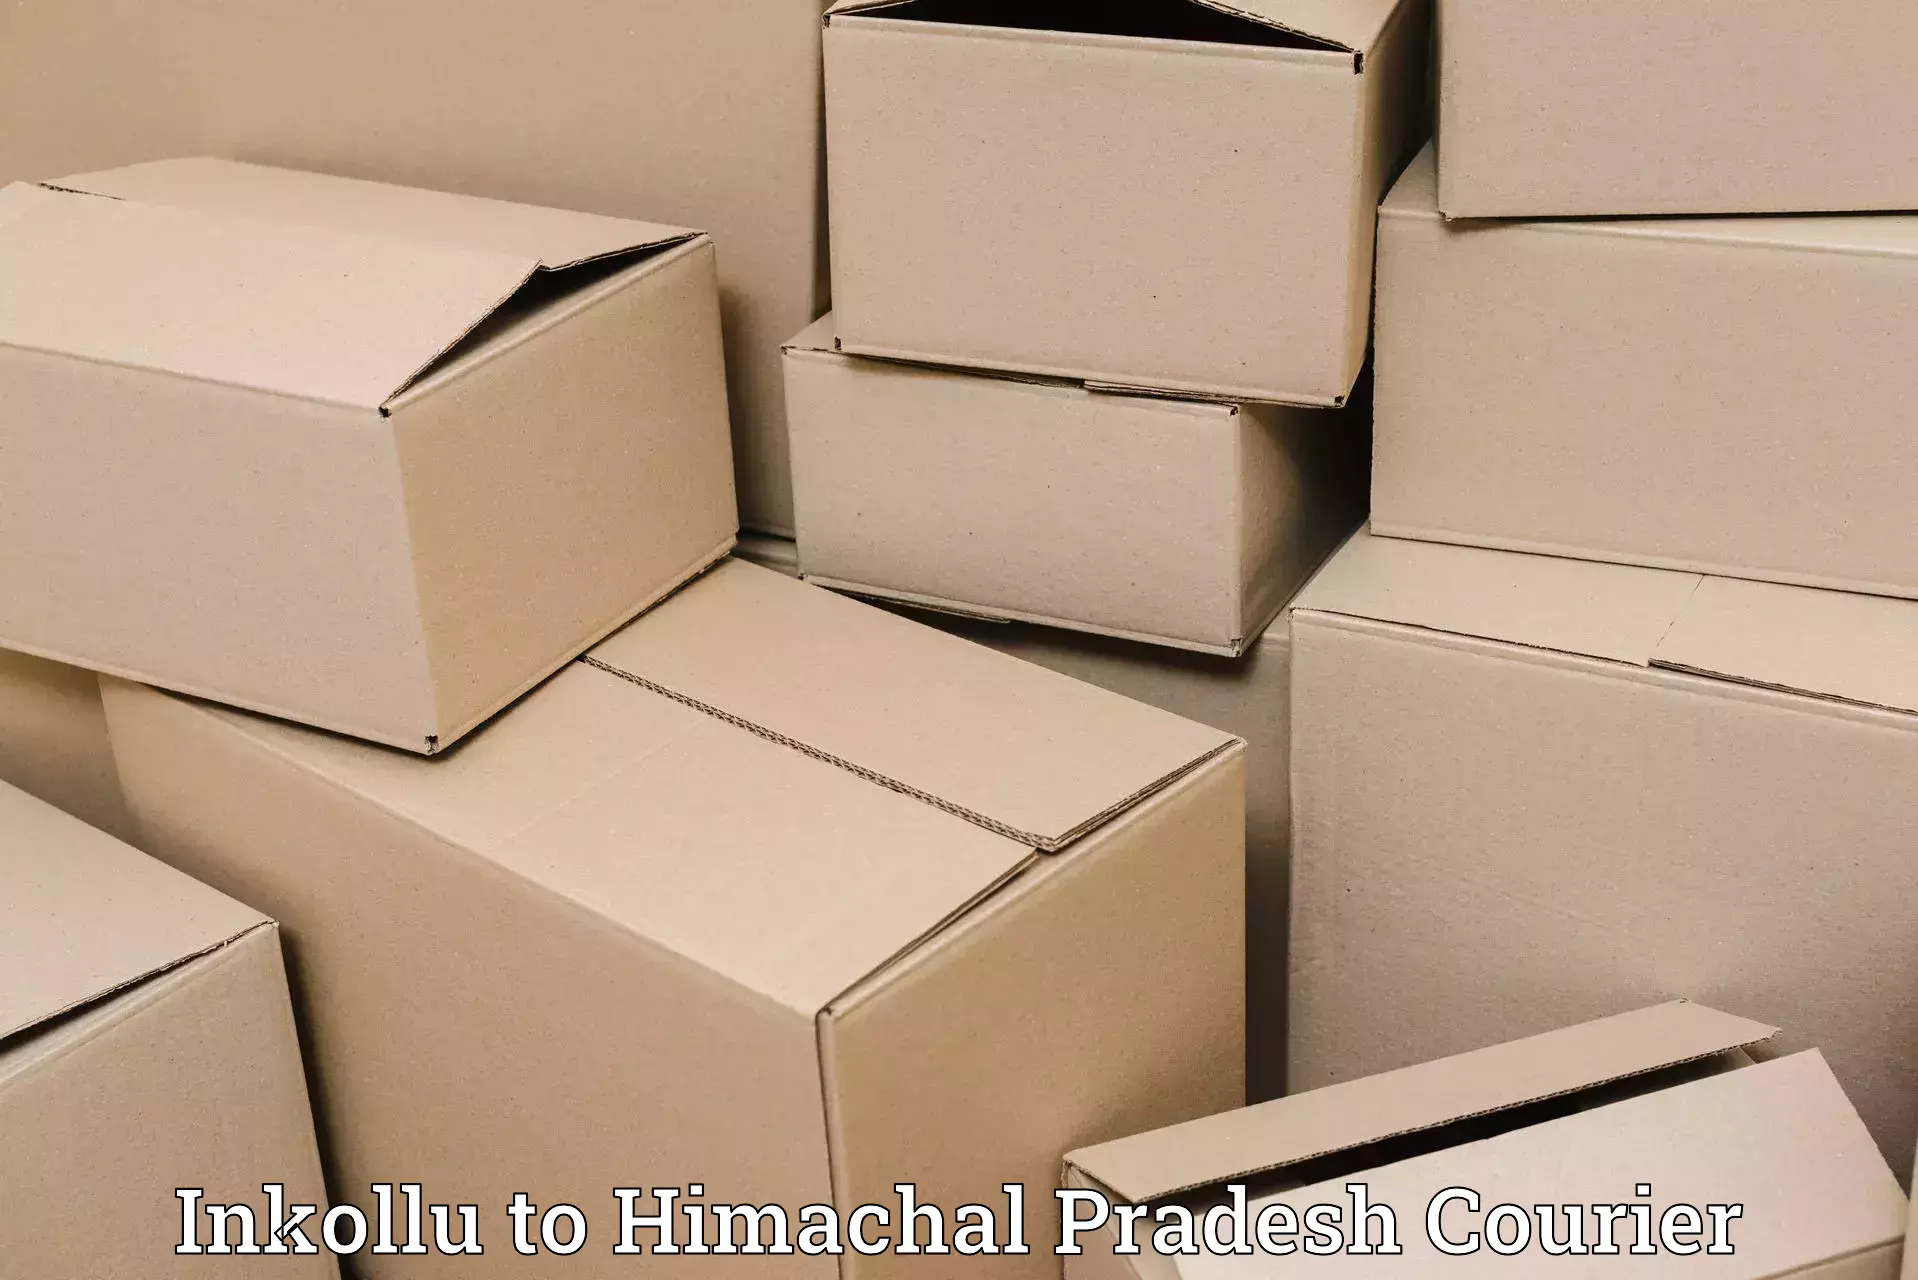 Personal parcel delivery in Inkollu to Kachhera